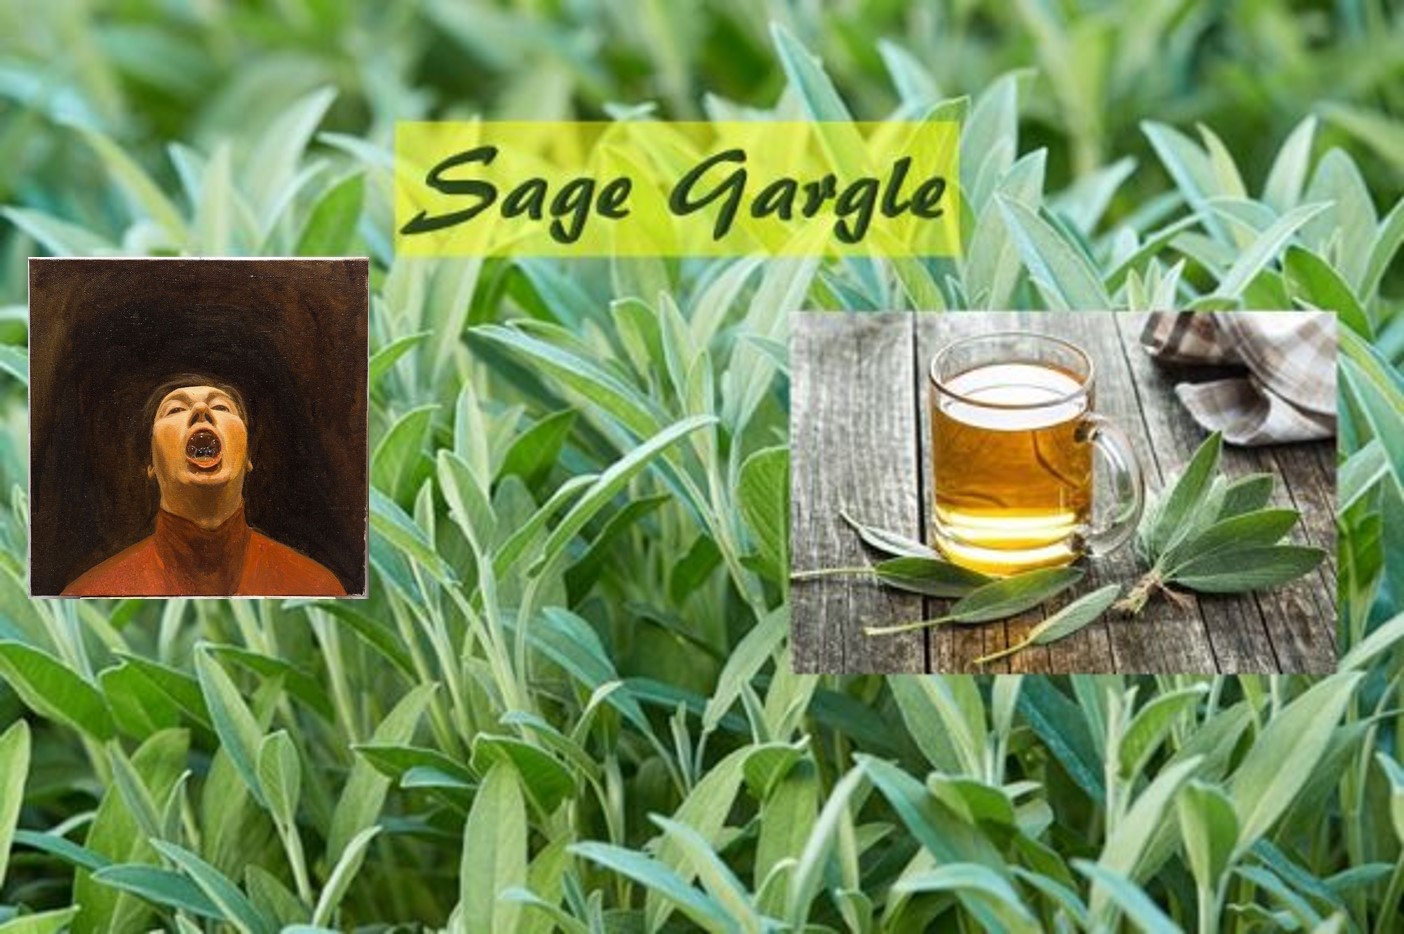 Sage water gargle